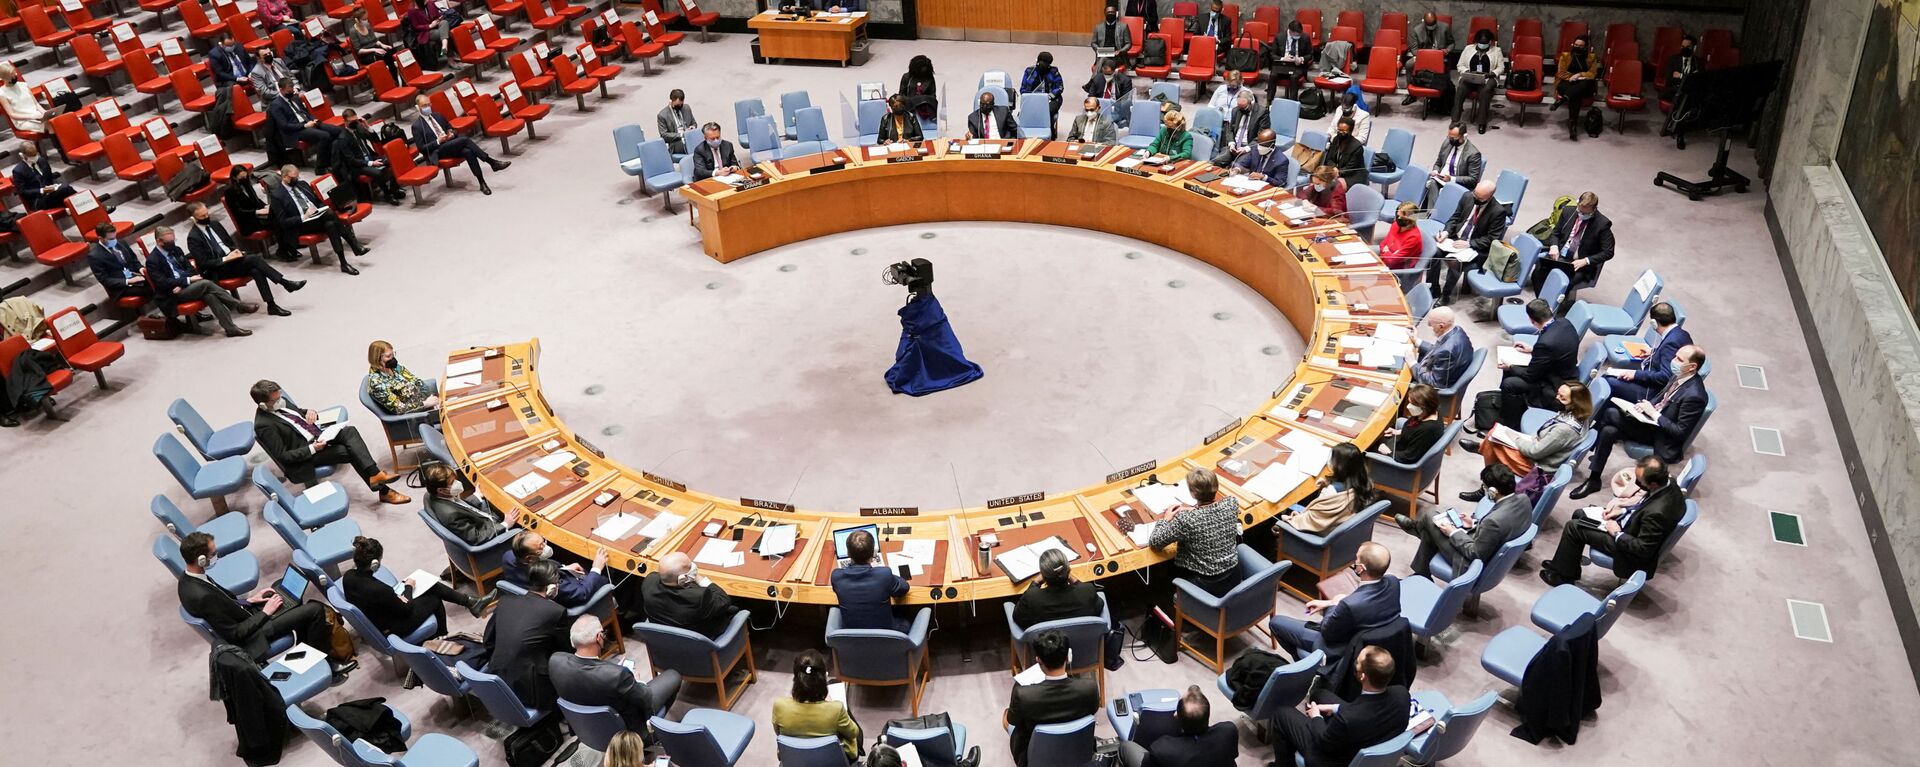  اجتماع مجلس الأمن التابع للأمم المتحدة بعد أن اعترفت روسيا بمنطقتين منفصلتين في شرق أوكرانيا ككيانين مستقلين، في مدينة نيويورك، الولايات المتحدة 21 فبراير 2022. - سبوتنيك عربي, 1920, 04.04.2022